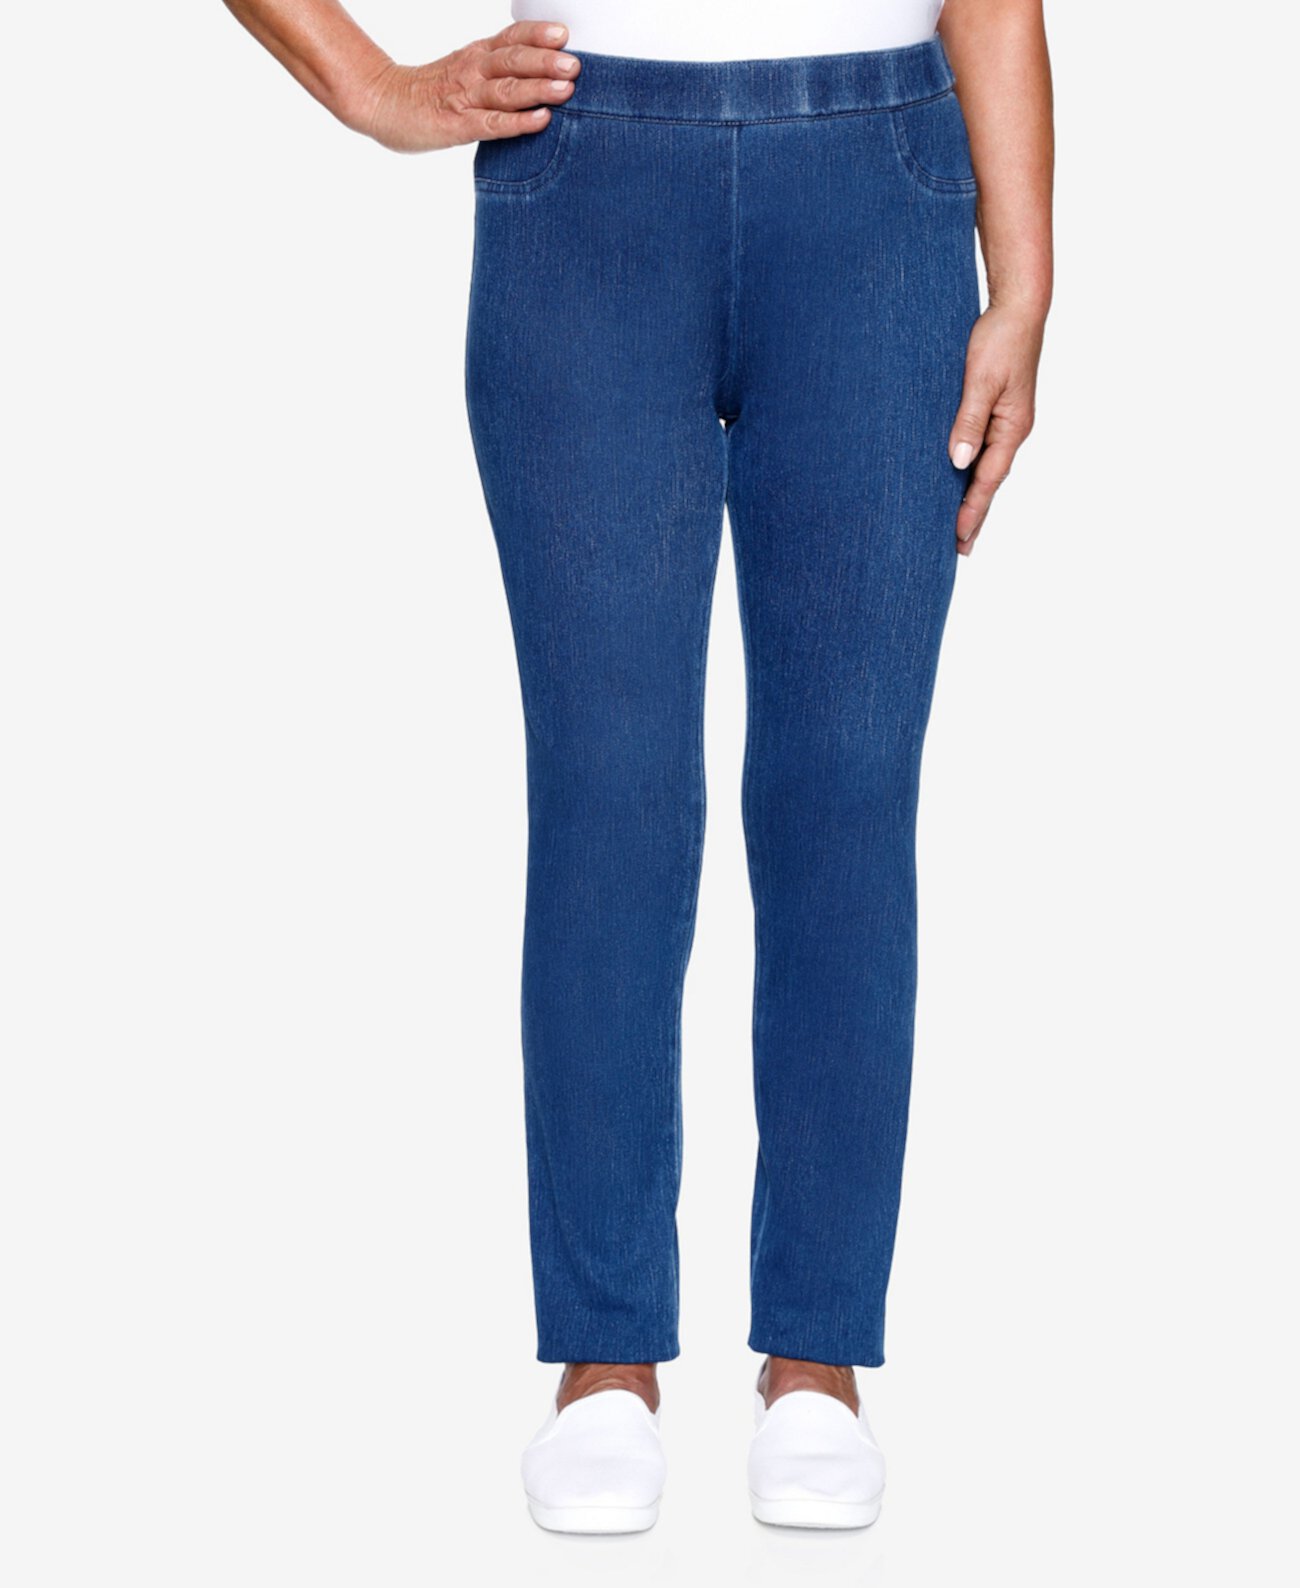 Вязаные джинсовые джеггинсы больших размеров Lazy Daisy Alfred Dunner